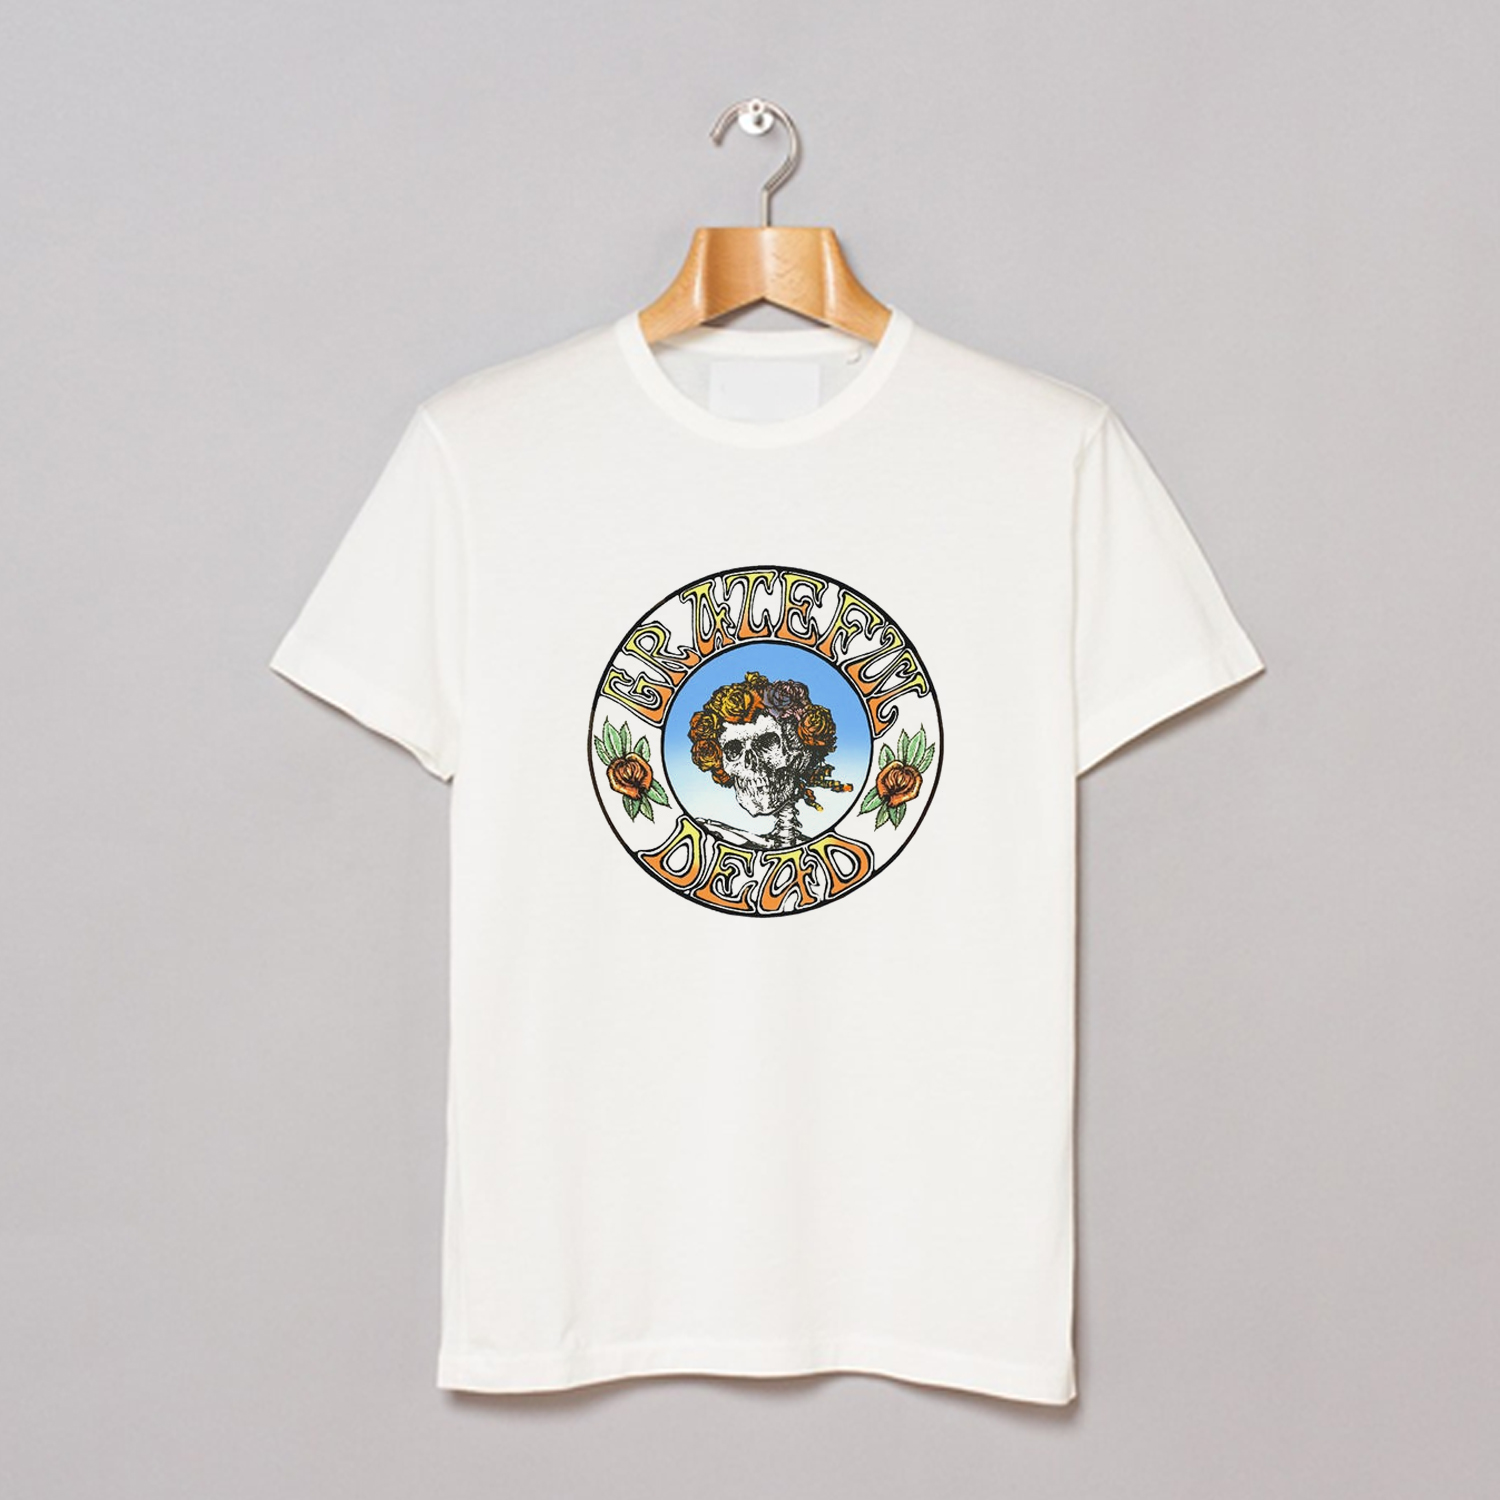 Vintage 70s Grateful Dead T-shirt